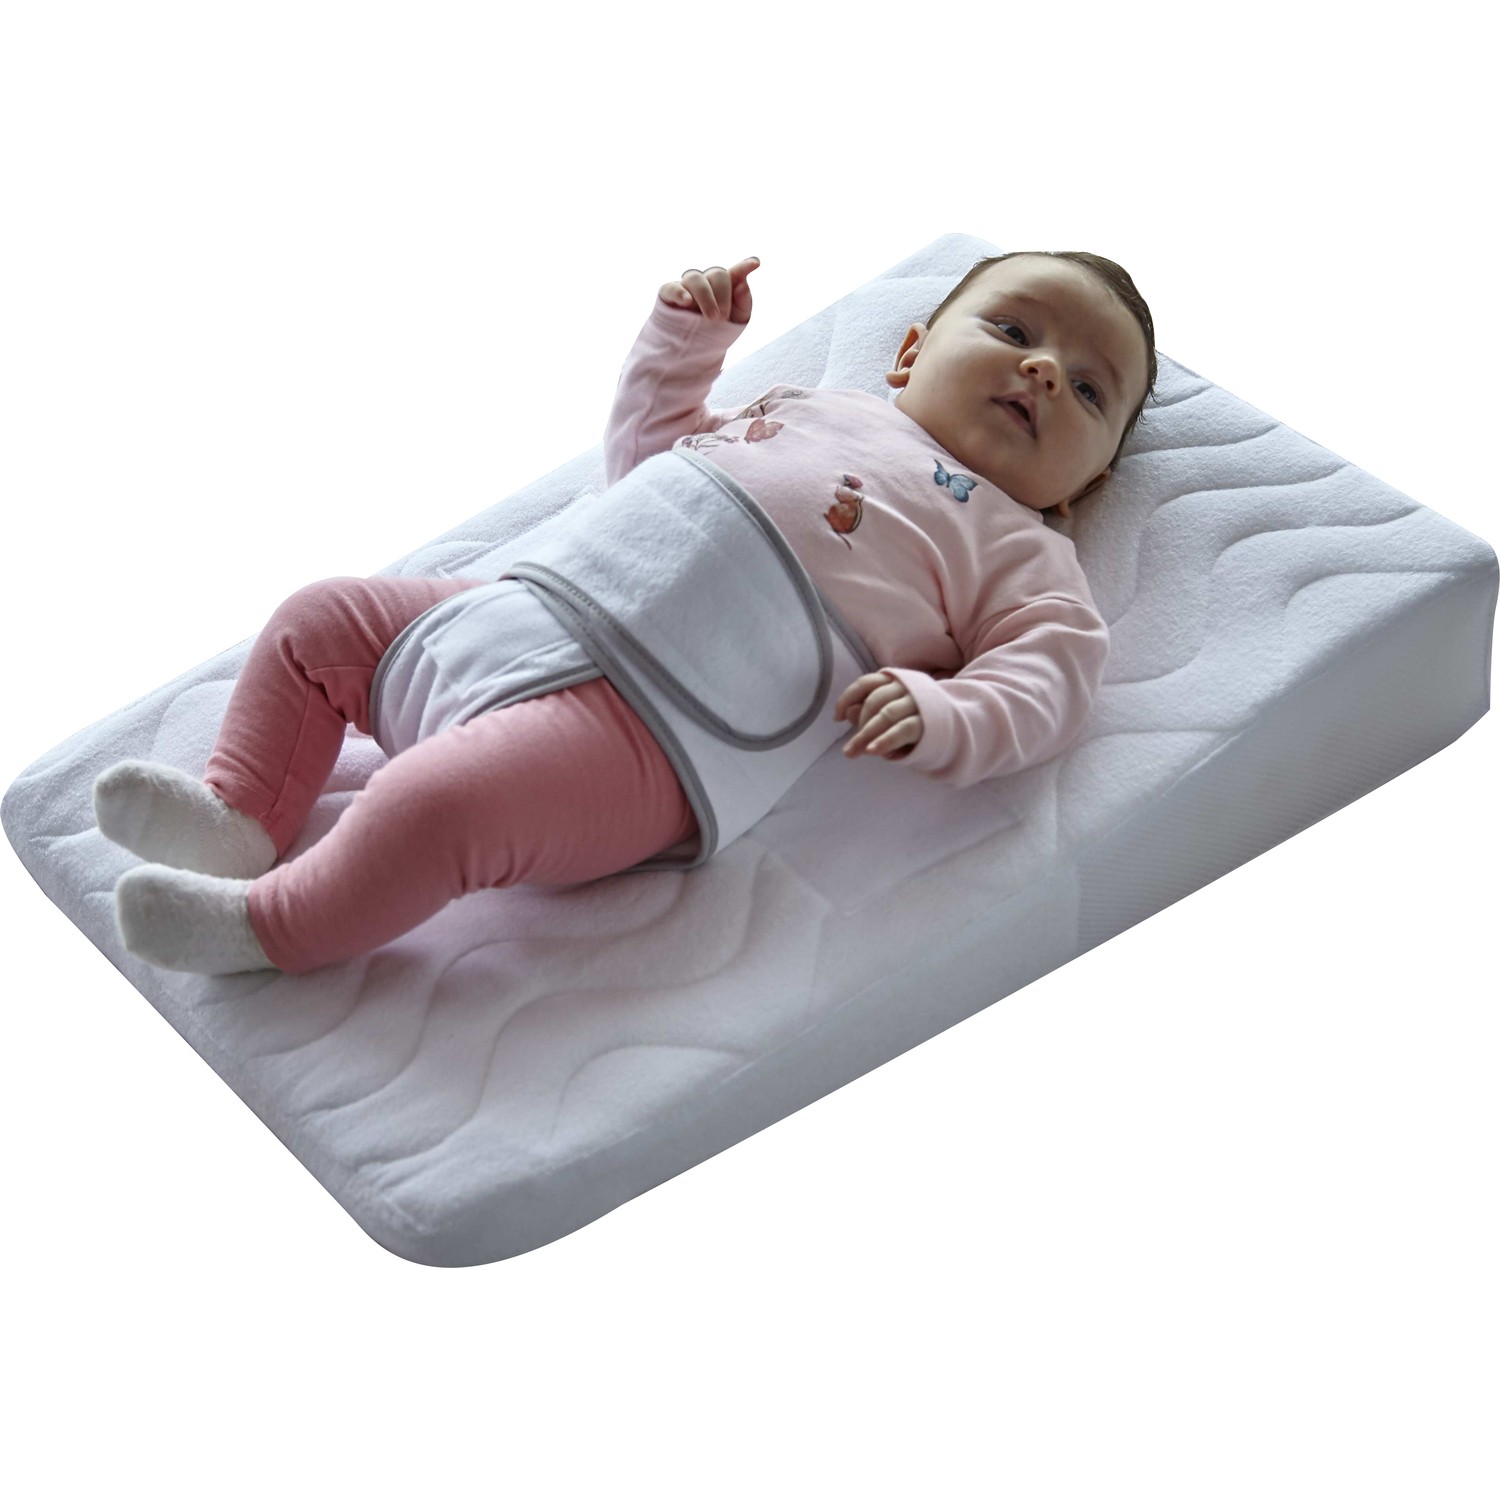 Reflü Yatağında Bebek Nasıl Yatirilir yatak